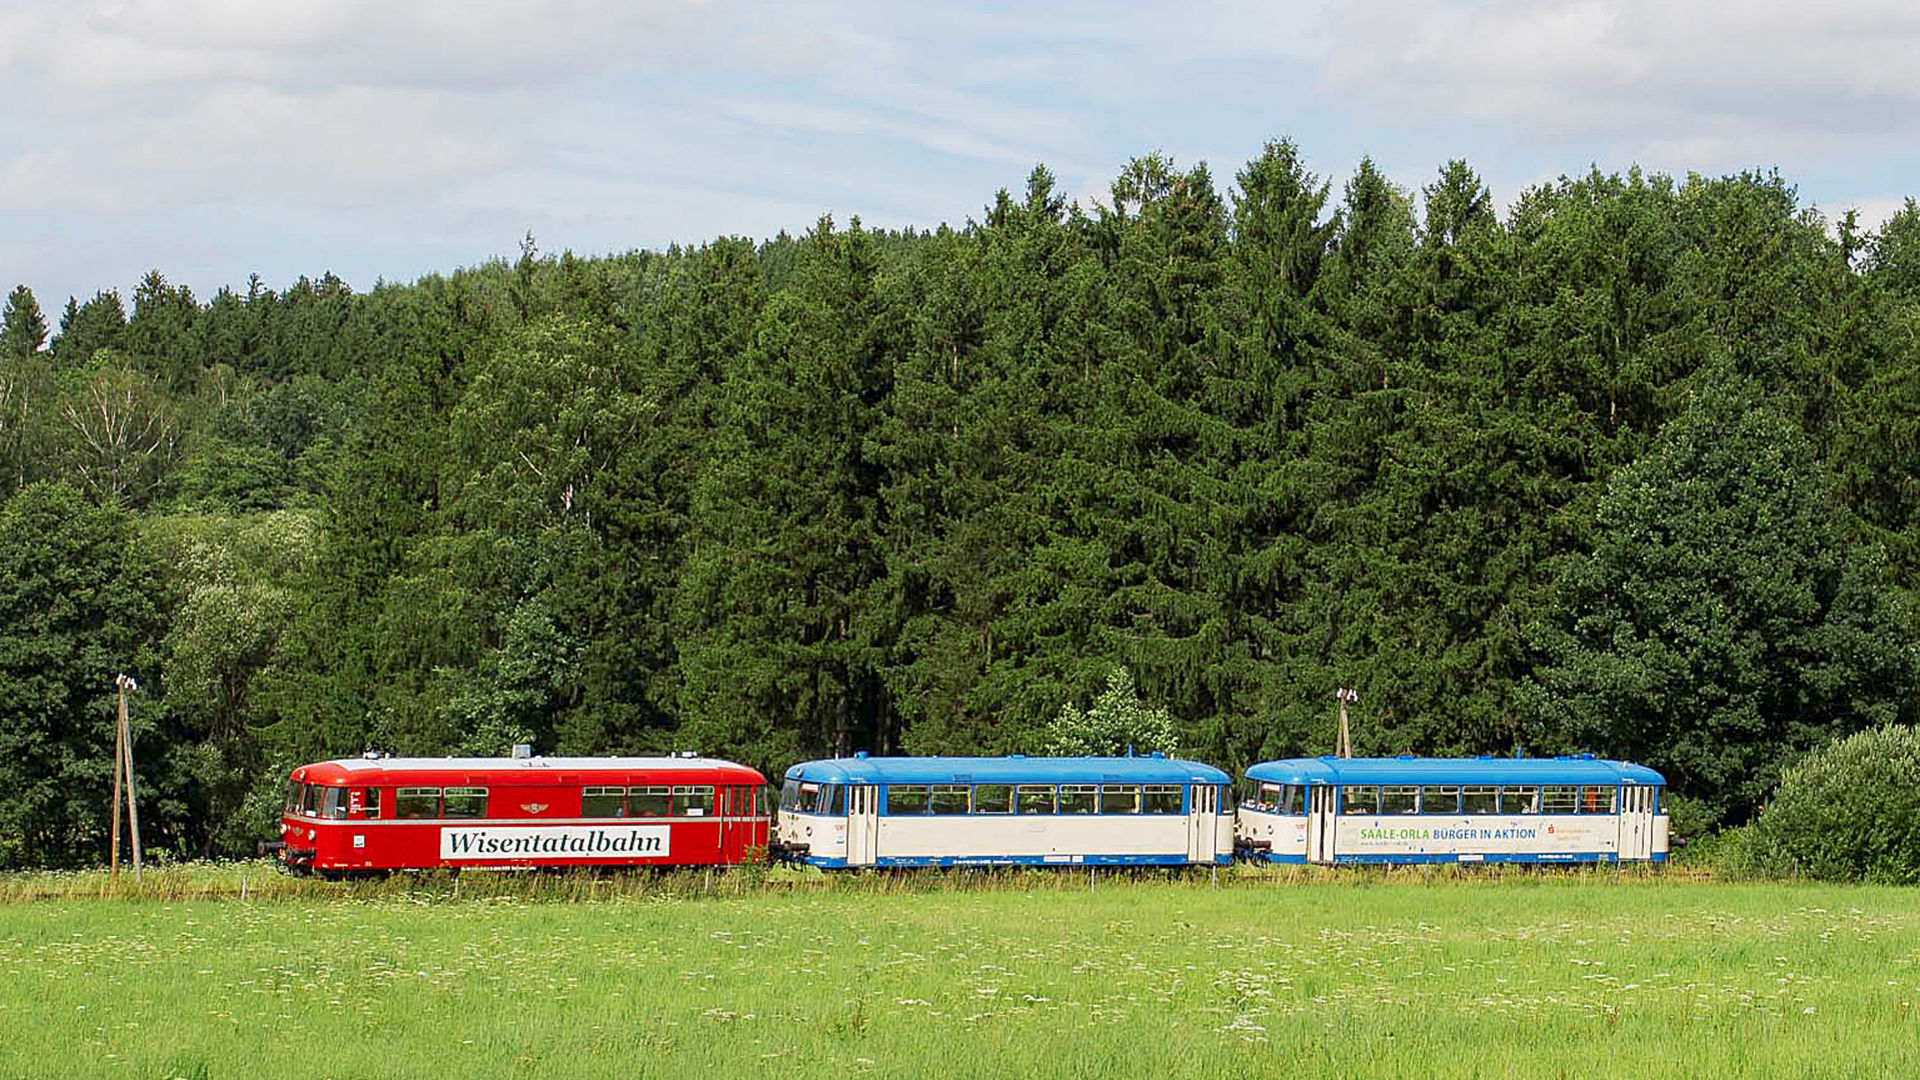 Triebwagen Wisentatalbahn 
© Förderverein Wisentatalbahn e.V.